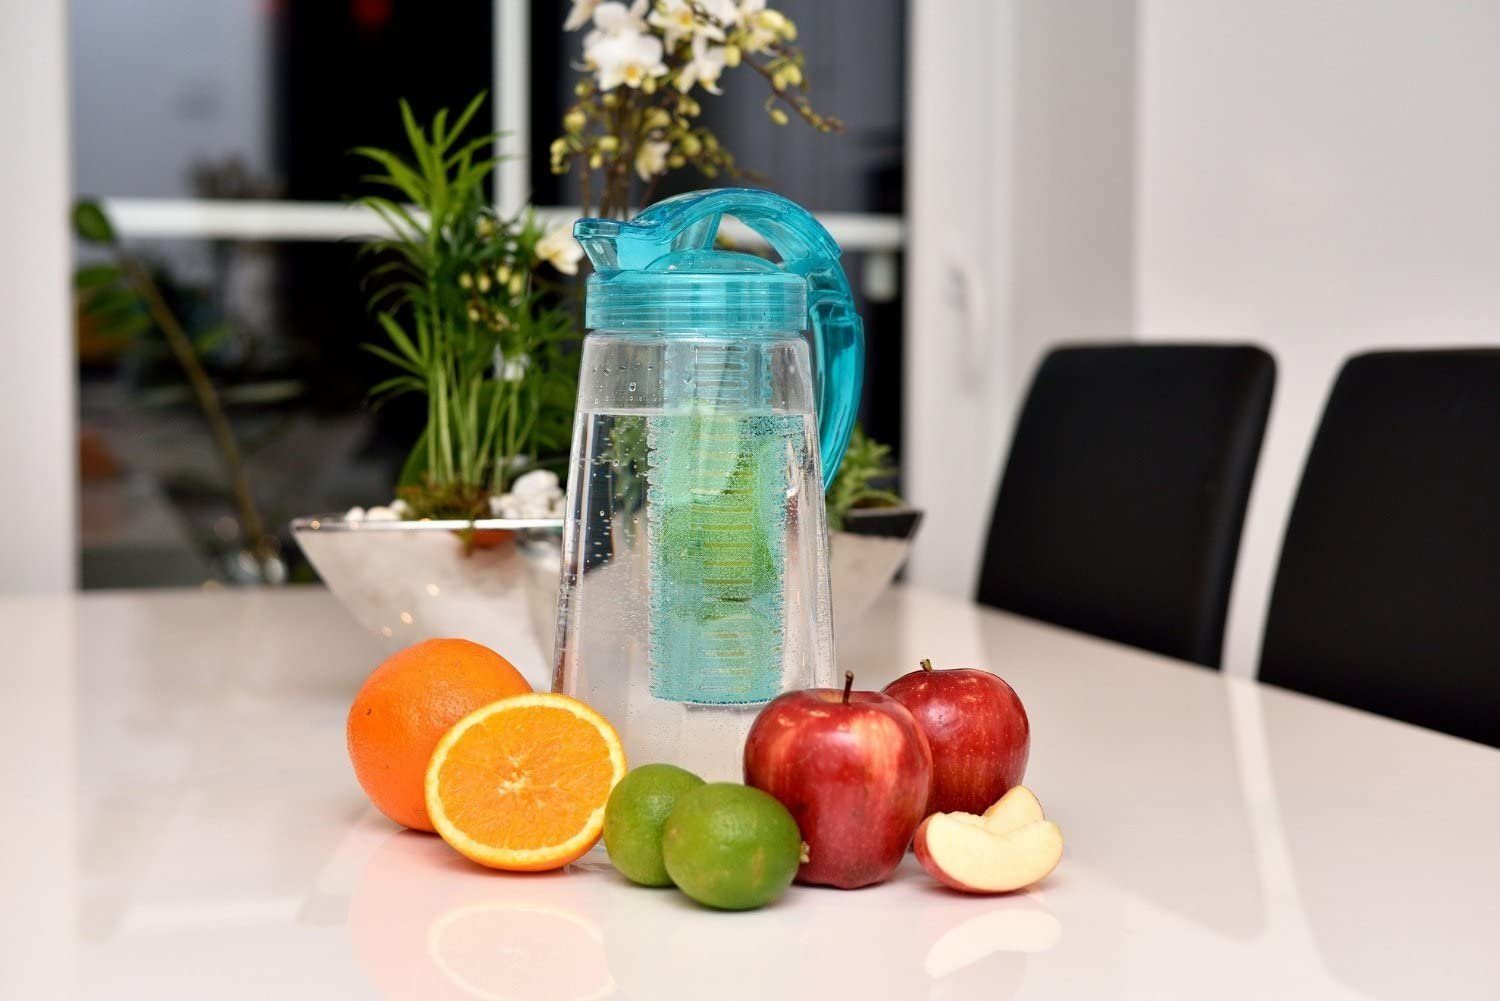 mit Frucht-Einsatz, l Wasserkrug Tritan 2 BPA-frei, Karaffe, Kunststoff-Karaffe türkis RUBBERNECK